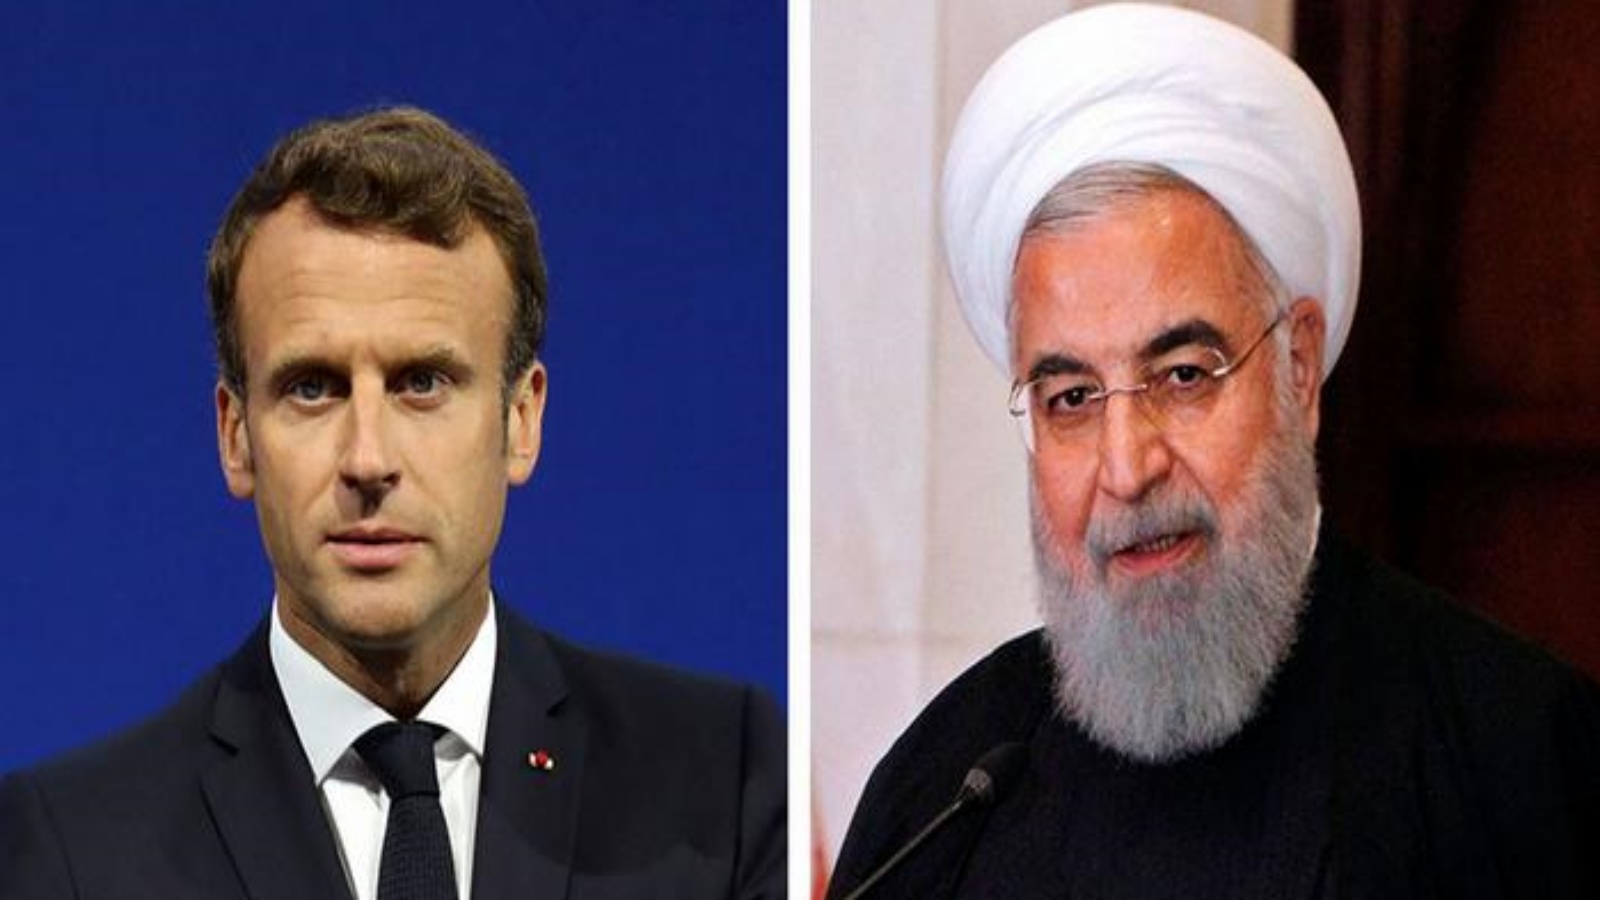 الرئيس الإيراني حسن روحاني - الرئيس الفرنسي إيمانويل ماكرون. أ ف ب